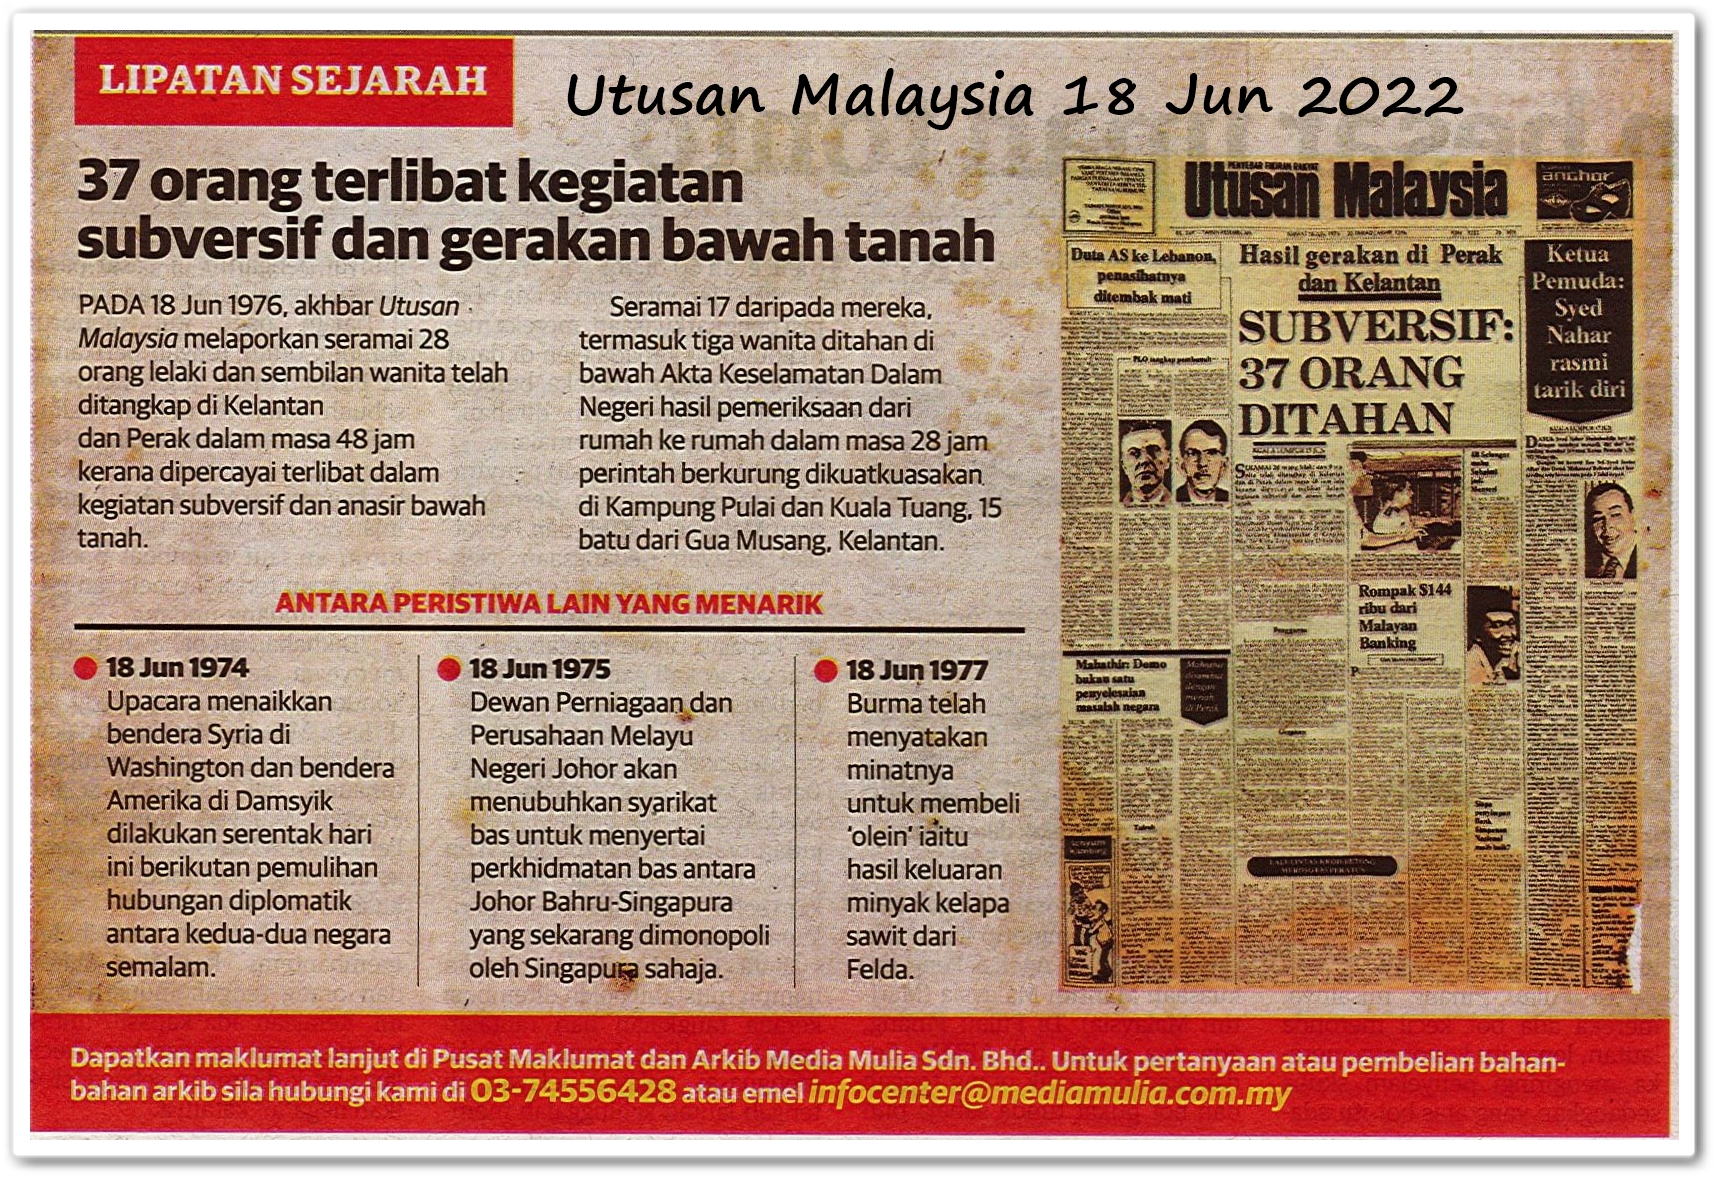 Lipatan sejarah 18 Jun - Keratan akhbar Utusan Malaysia 18 Jun 2022